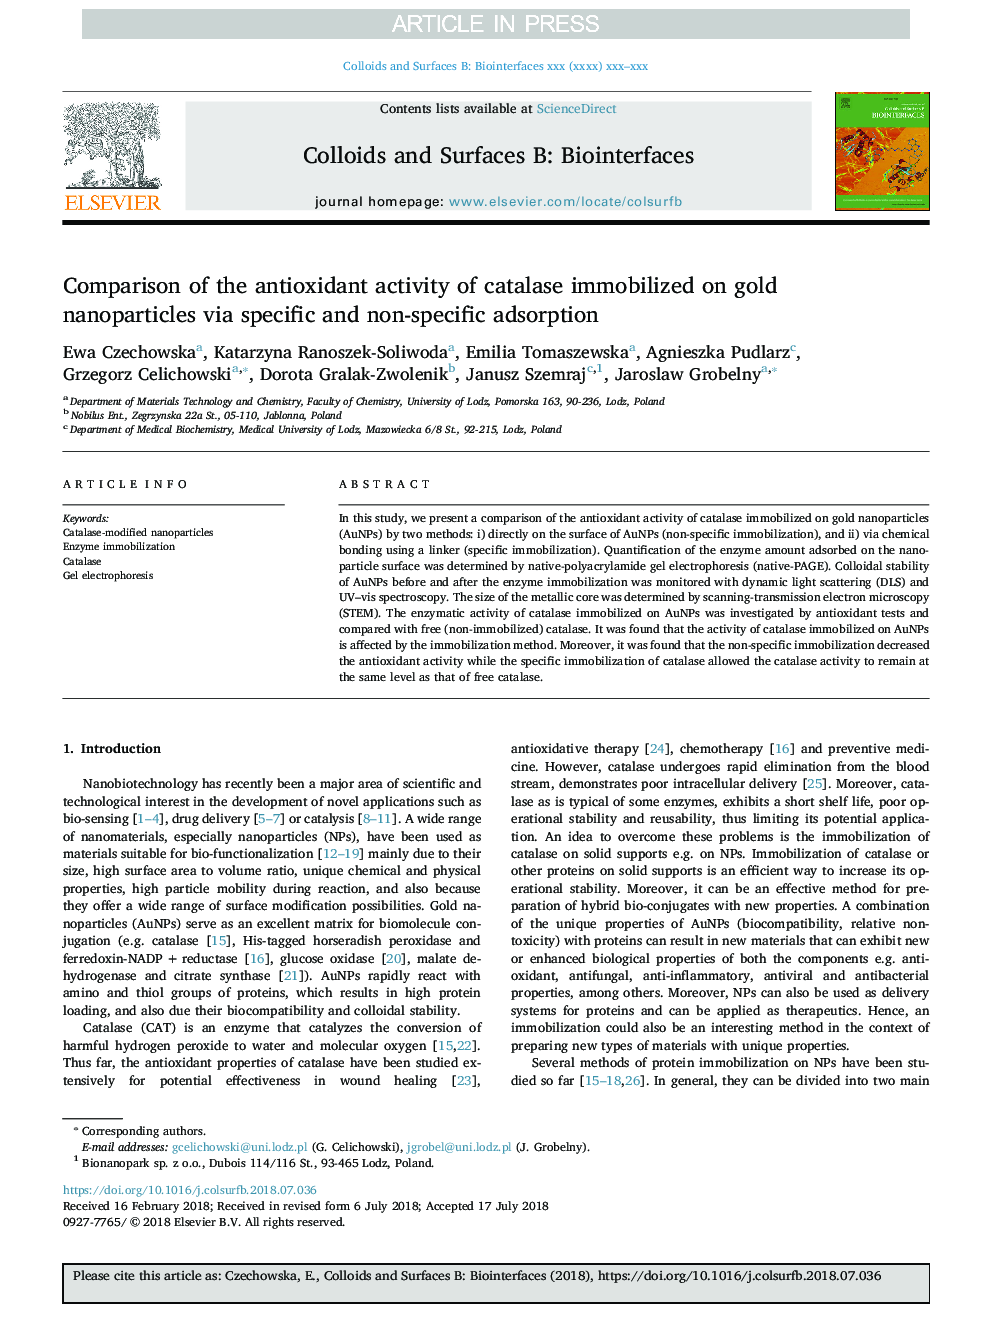 مقایسه فعالیت آنتی اکسیدانی کاتالاز بر روی نانوذرات طلا با استفاده از جذب خاص و غیر اختصاصی